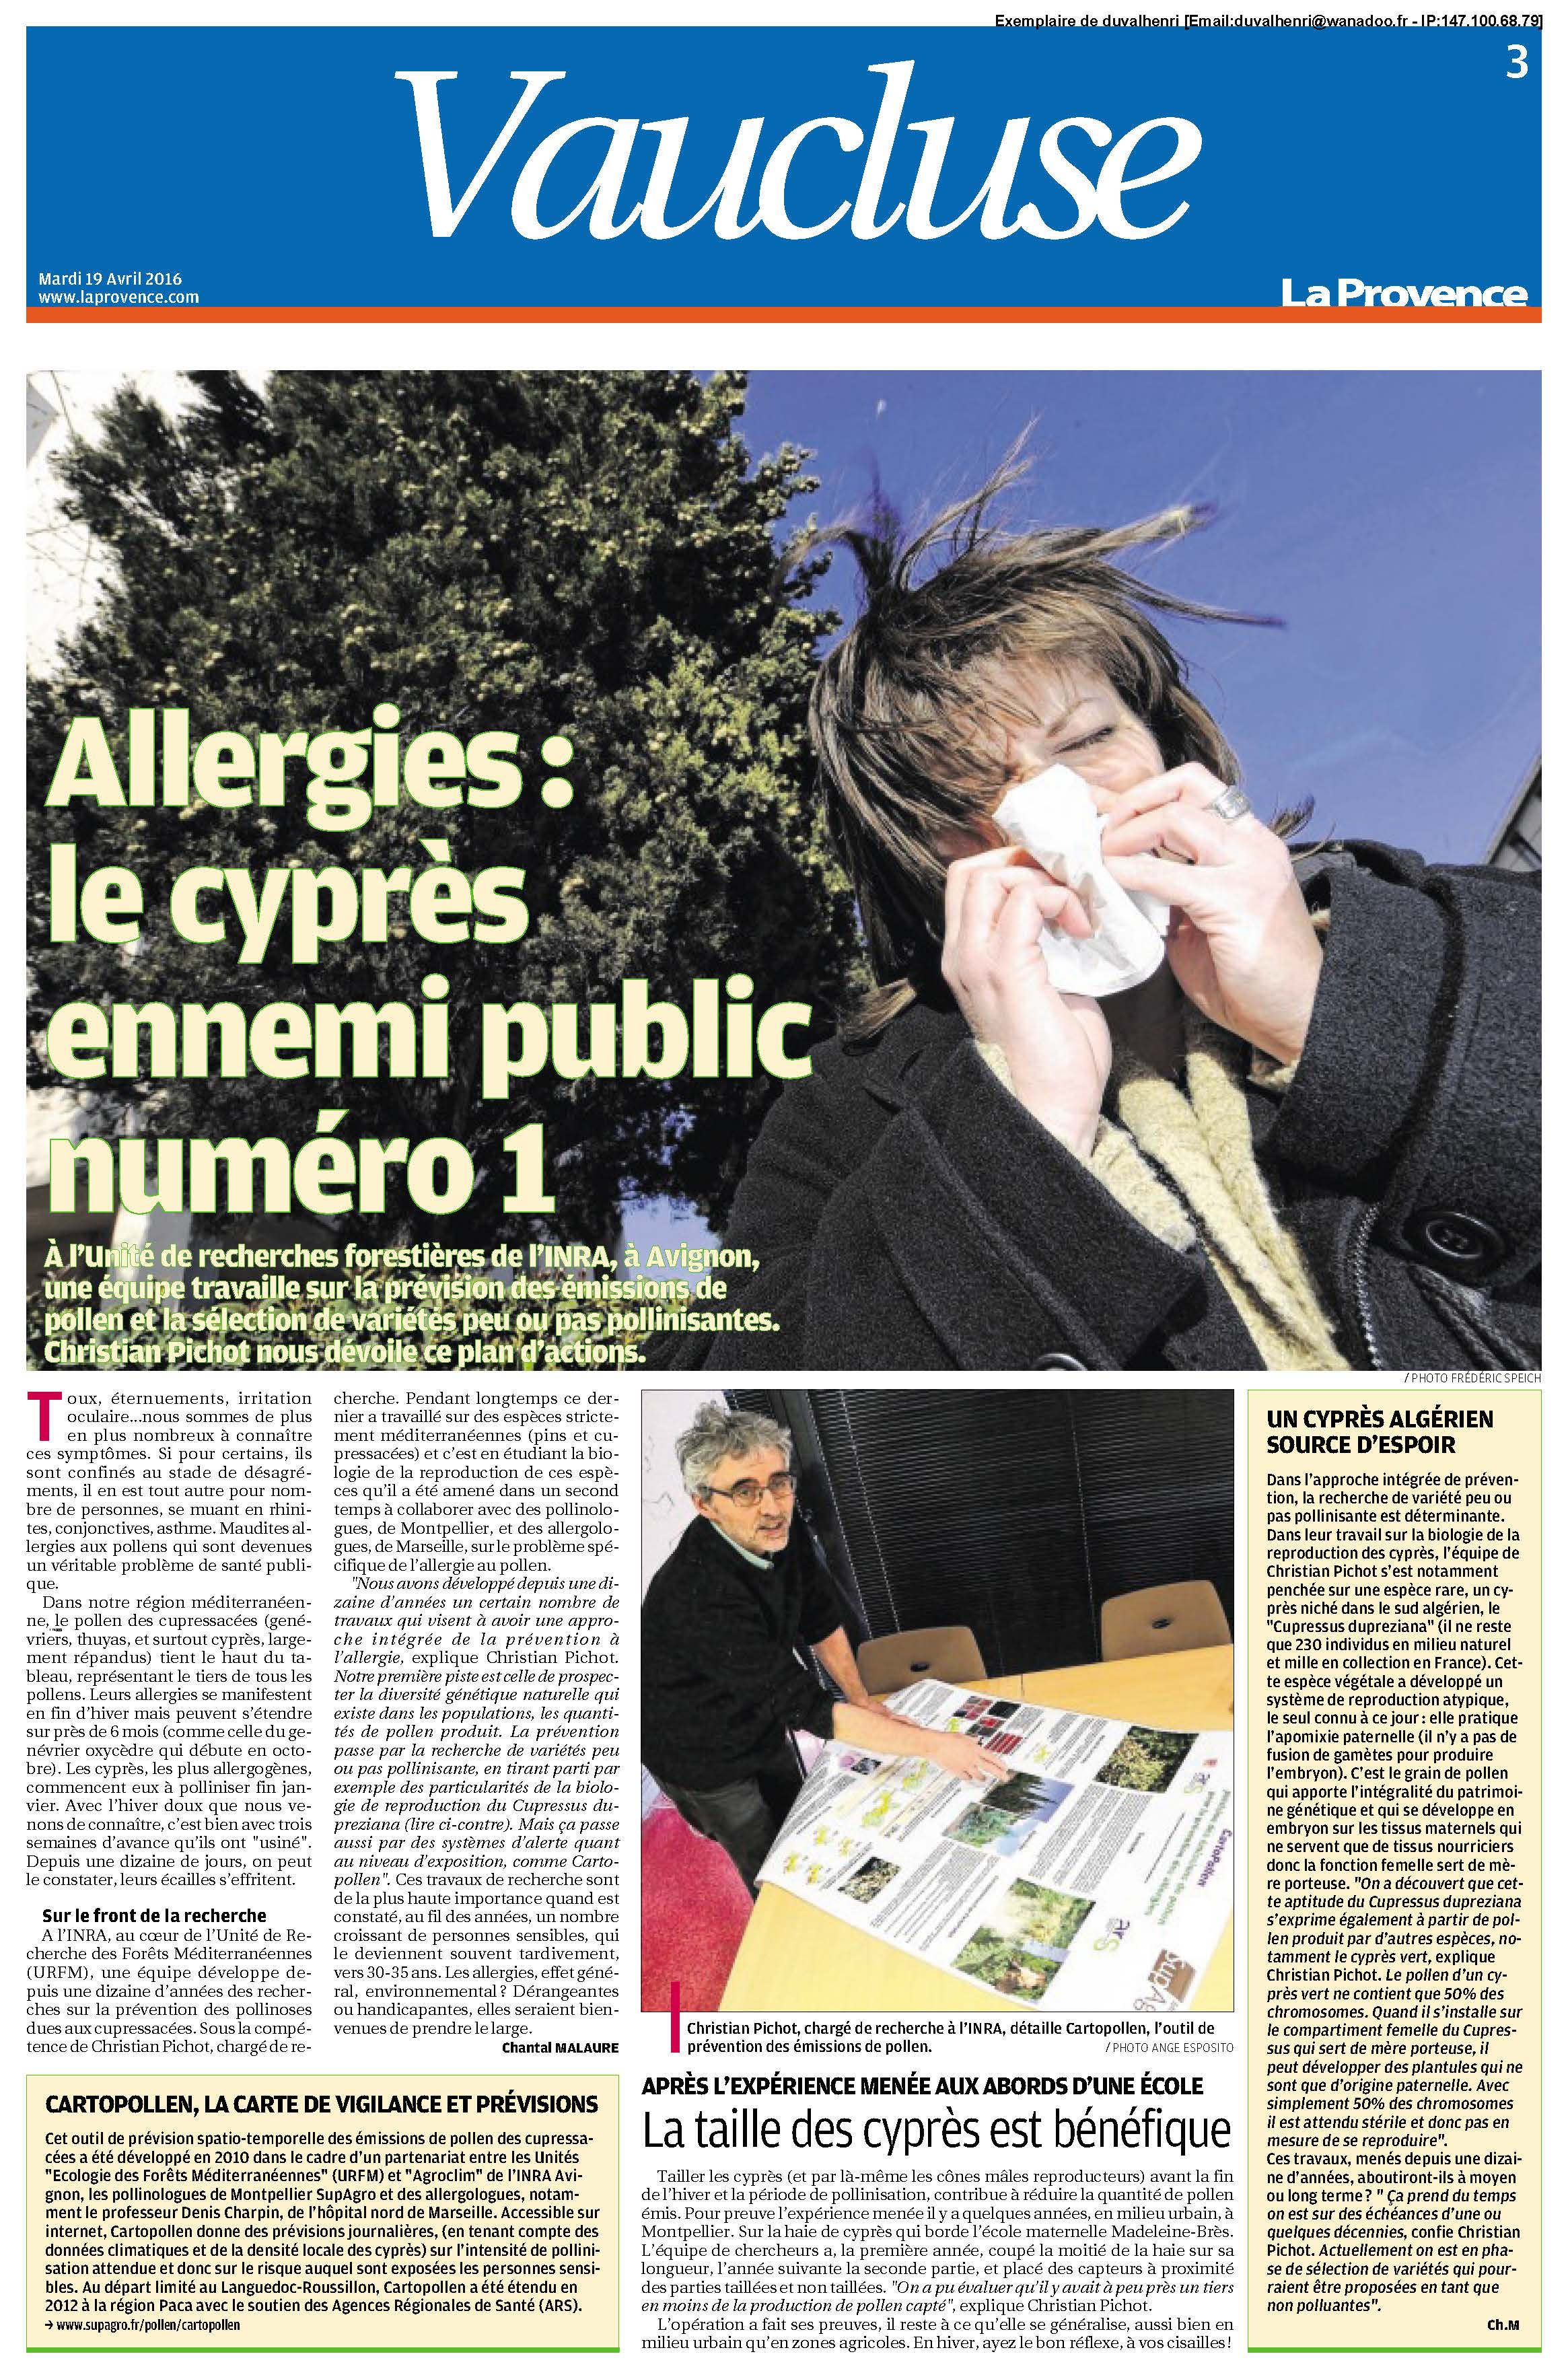 Allergies : le cyprès ennemi public numéro 1